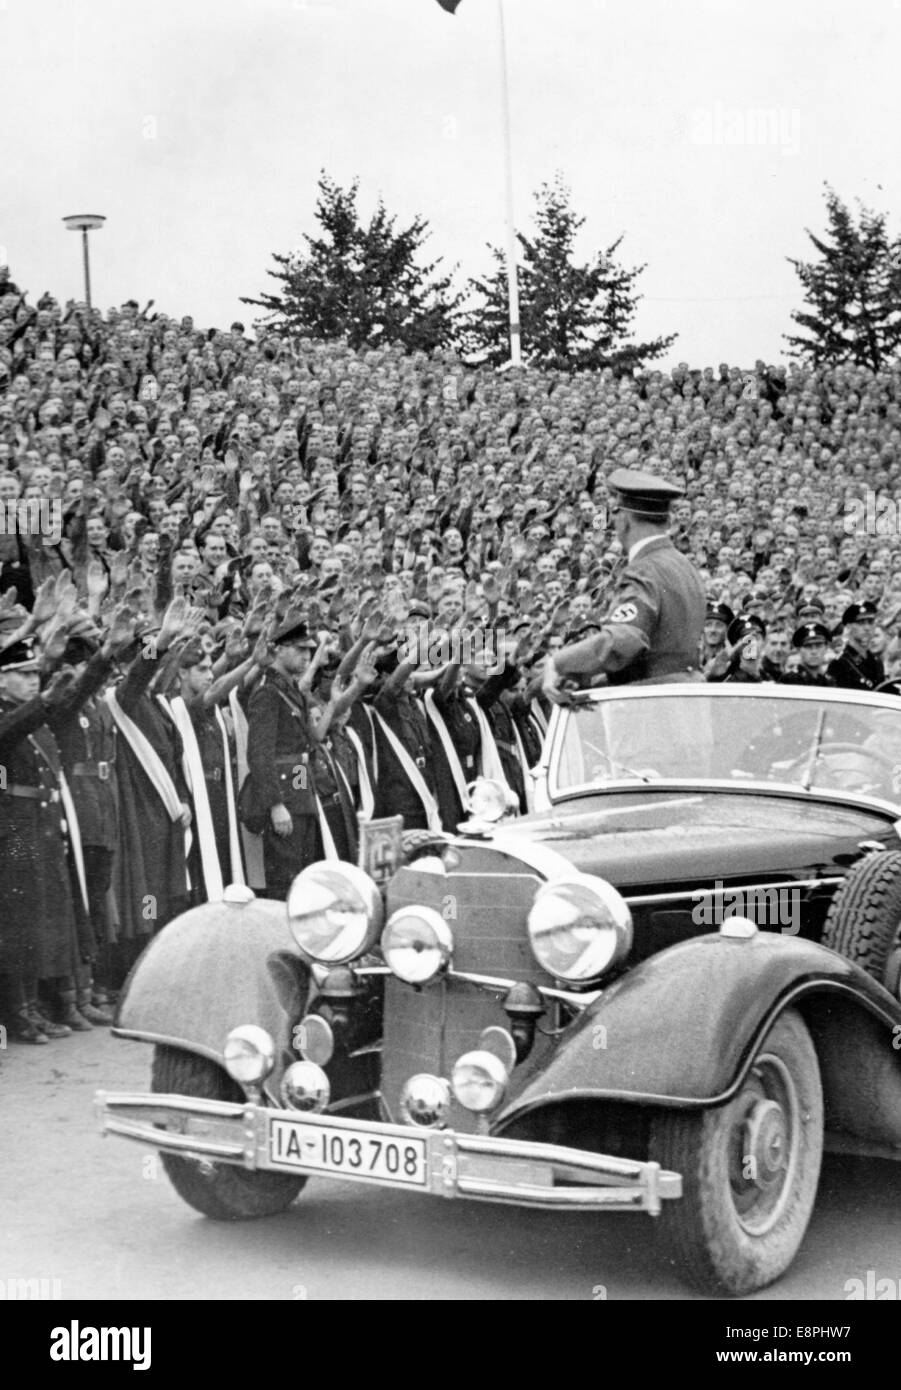 Nürnberger Rallye 1937 in Nürnberg, Deutschland - Nazi-Parteirallye - Adolf Hitler verlässt das Stadion der Hitlerjugend nach dem Ende des Appells der Hitlerjugend (HJ). (Qualitätsmängel aufgrund der historischen Bildkopie) Fotoarchiv für Zeitgeschichtee - KEIN KABELDIENST - Stockfoto